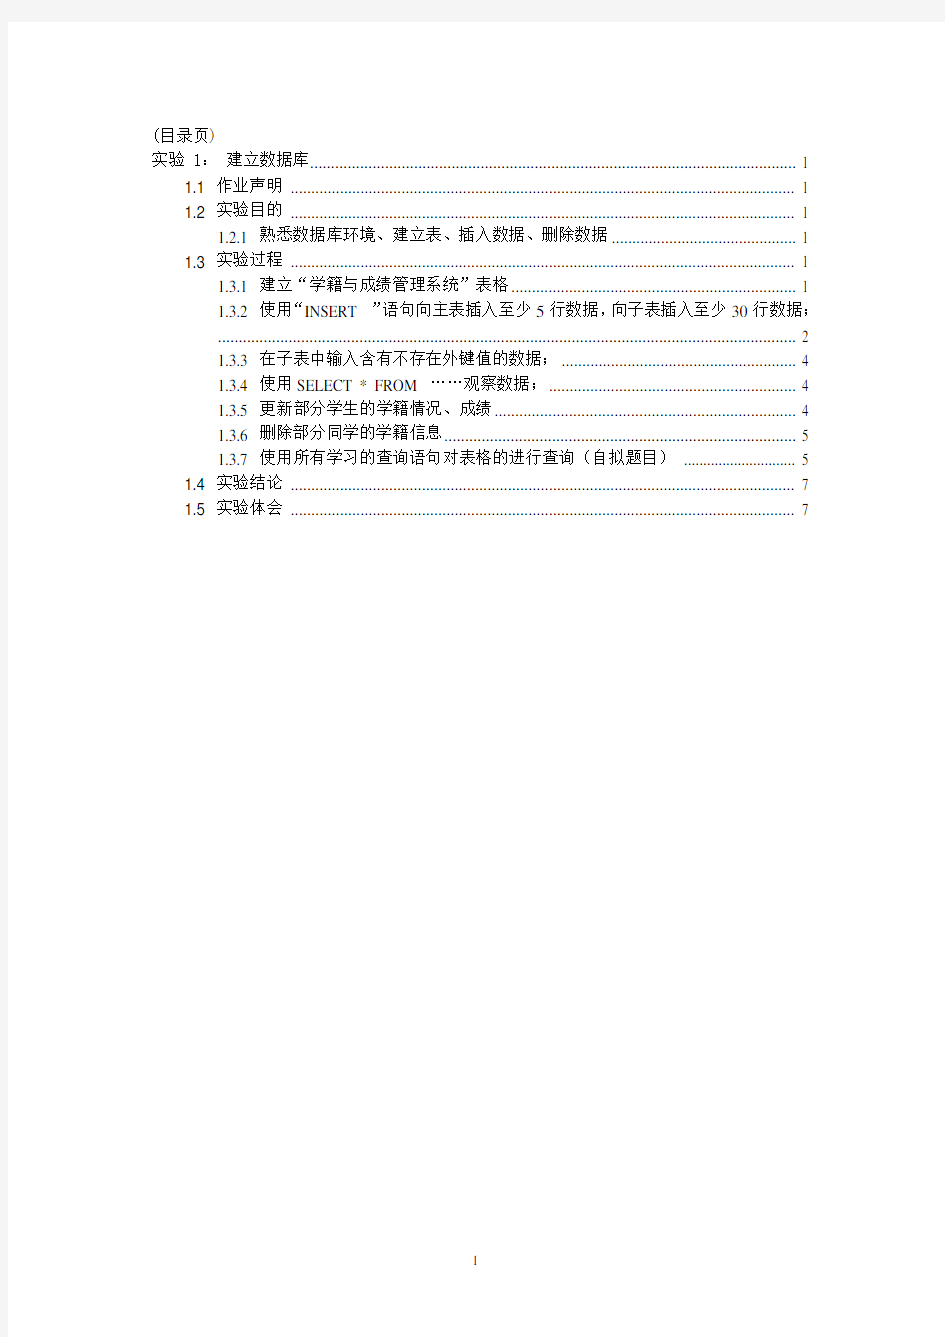 北京理工大学-数据库-实验1-建立数据库